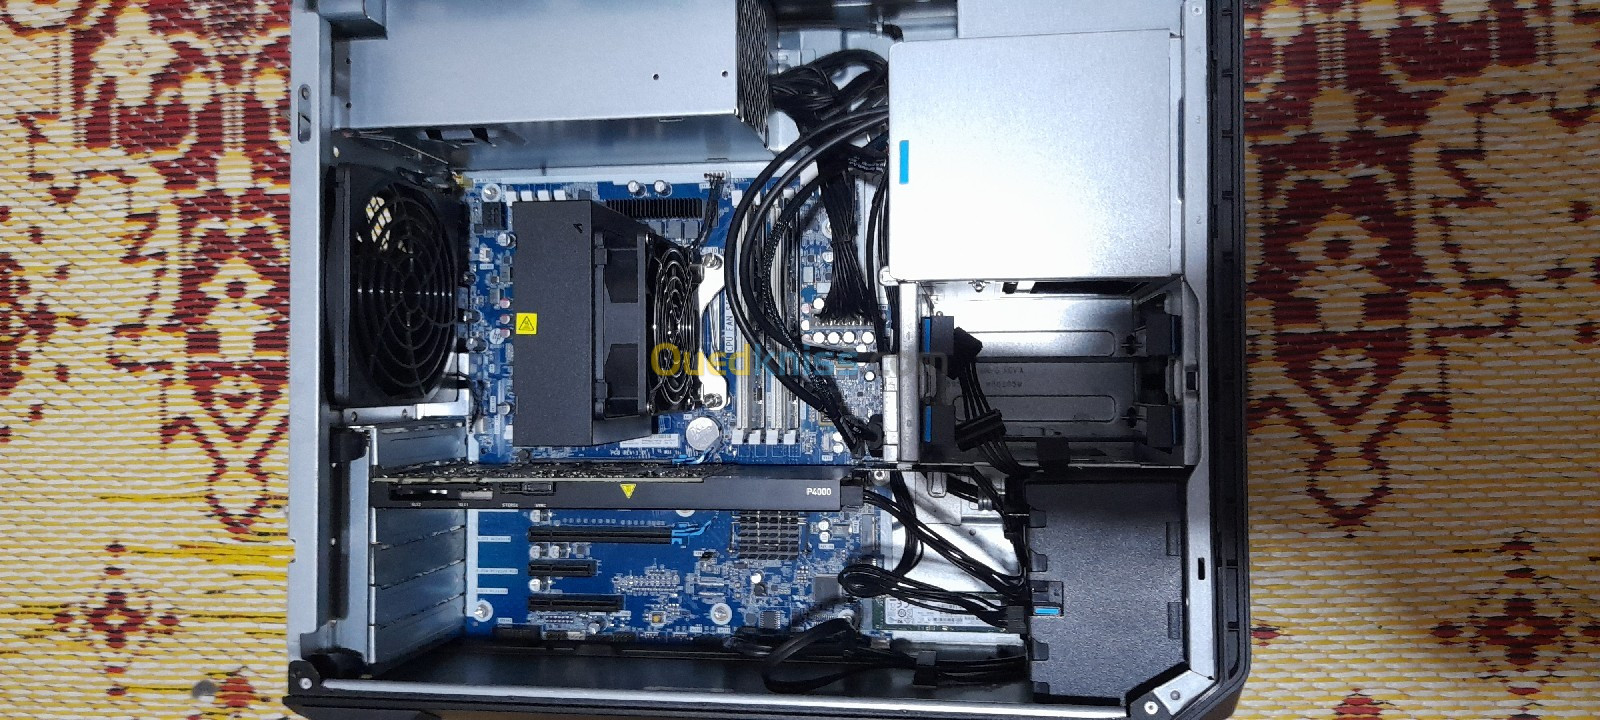 HP Z4 G4 MT - Intel Xeon W-2133 (3.60 GHz) 6C - 16GB DDR4 - 1x 512GB SSD quadro P4000 08gb 